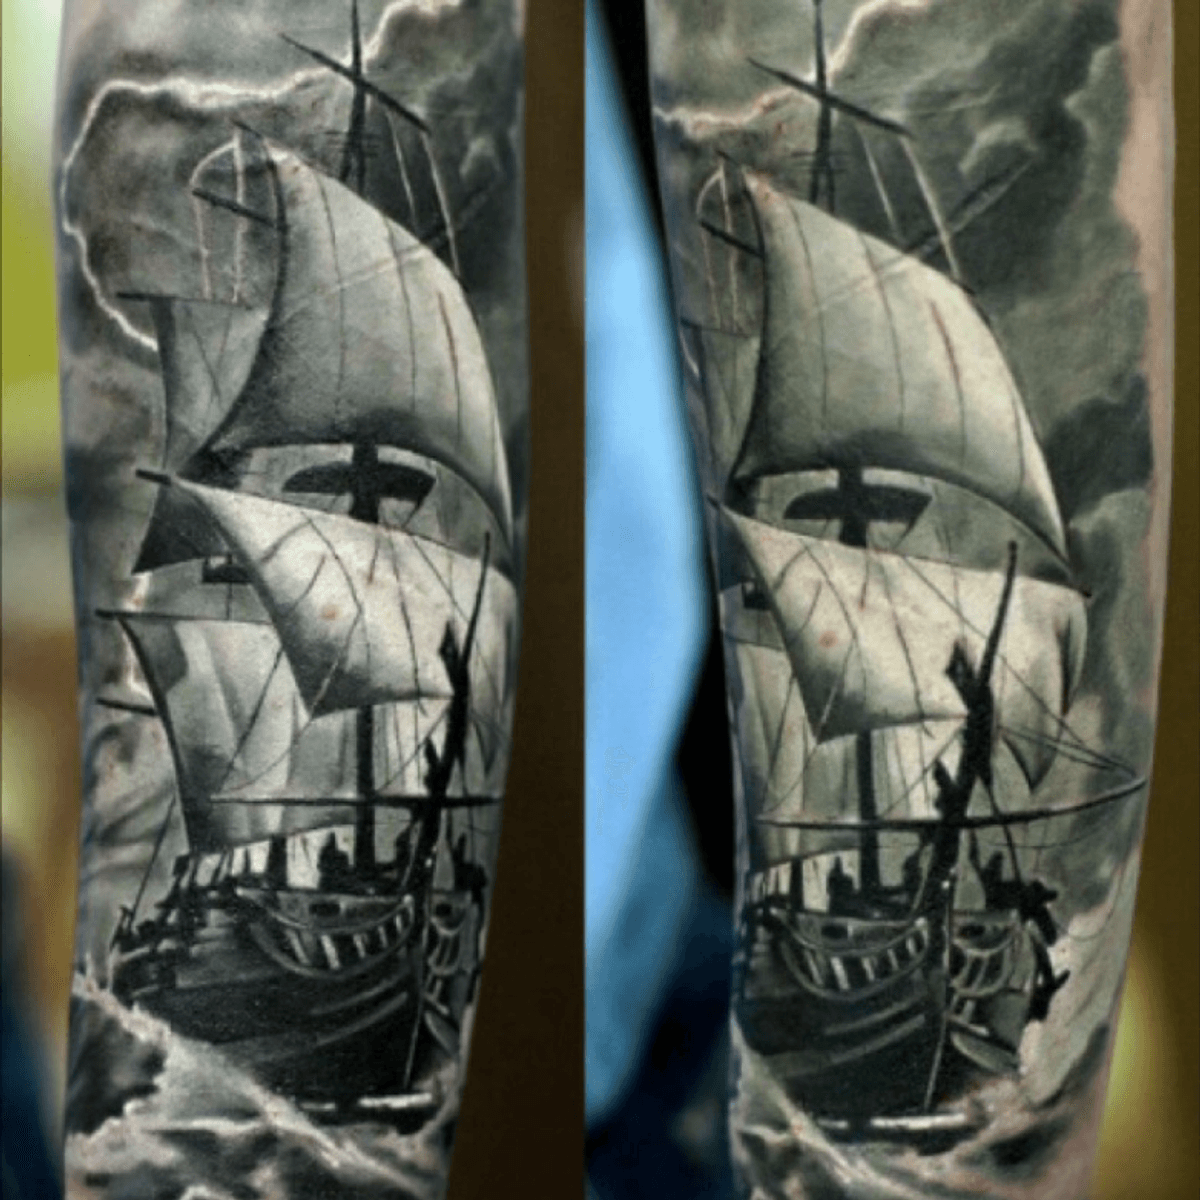 storm sea tattoo